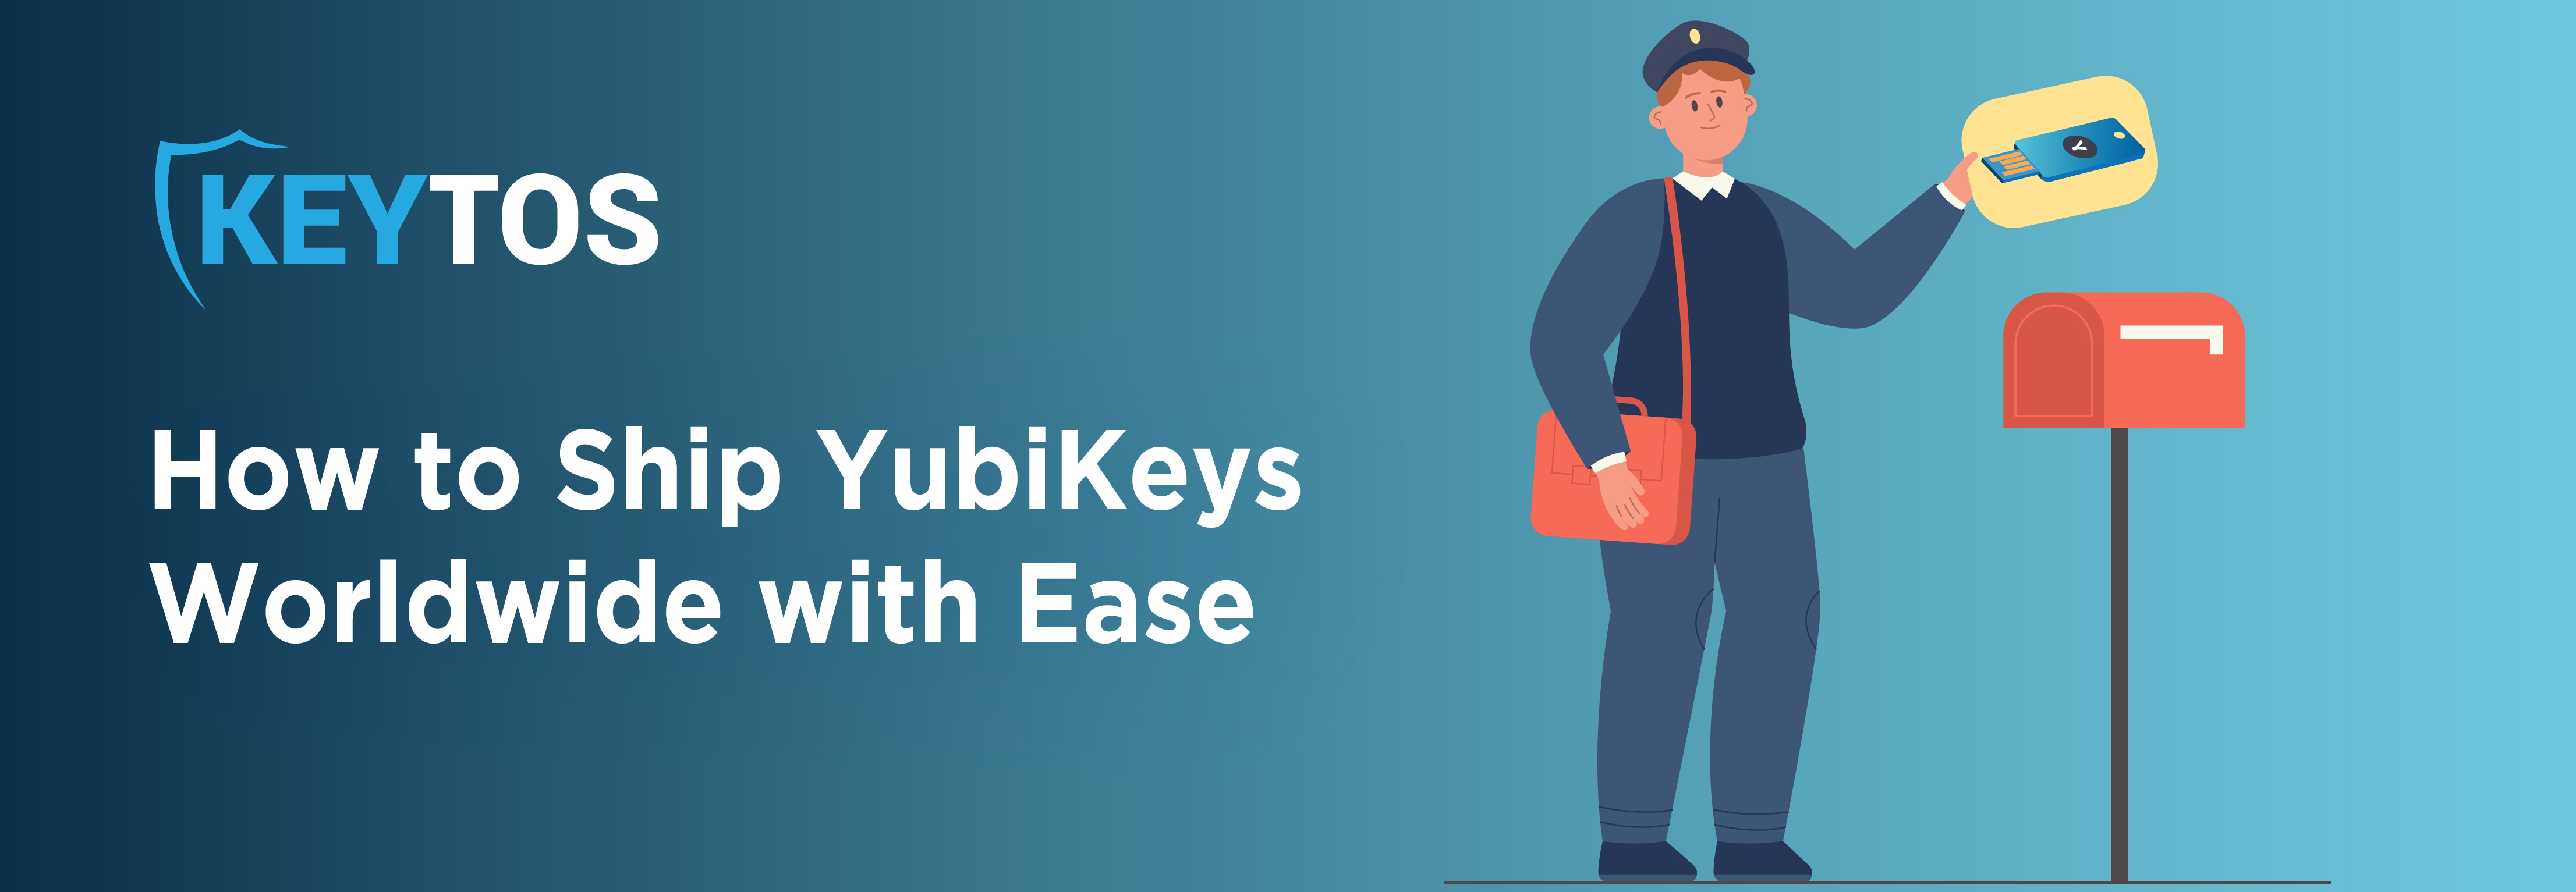 Cómo enviar YubiKeys, el envío global de YubiKey es fácil